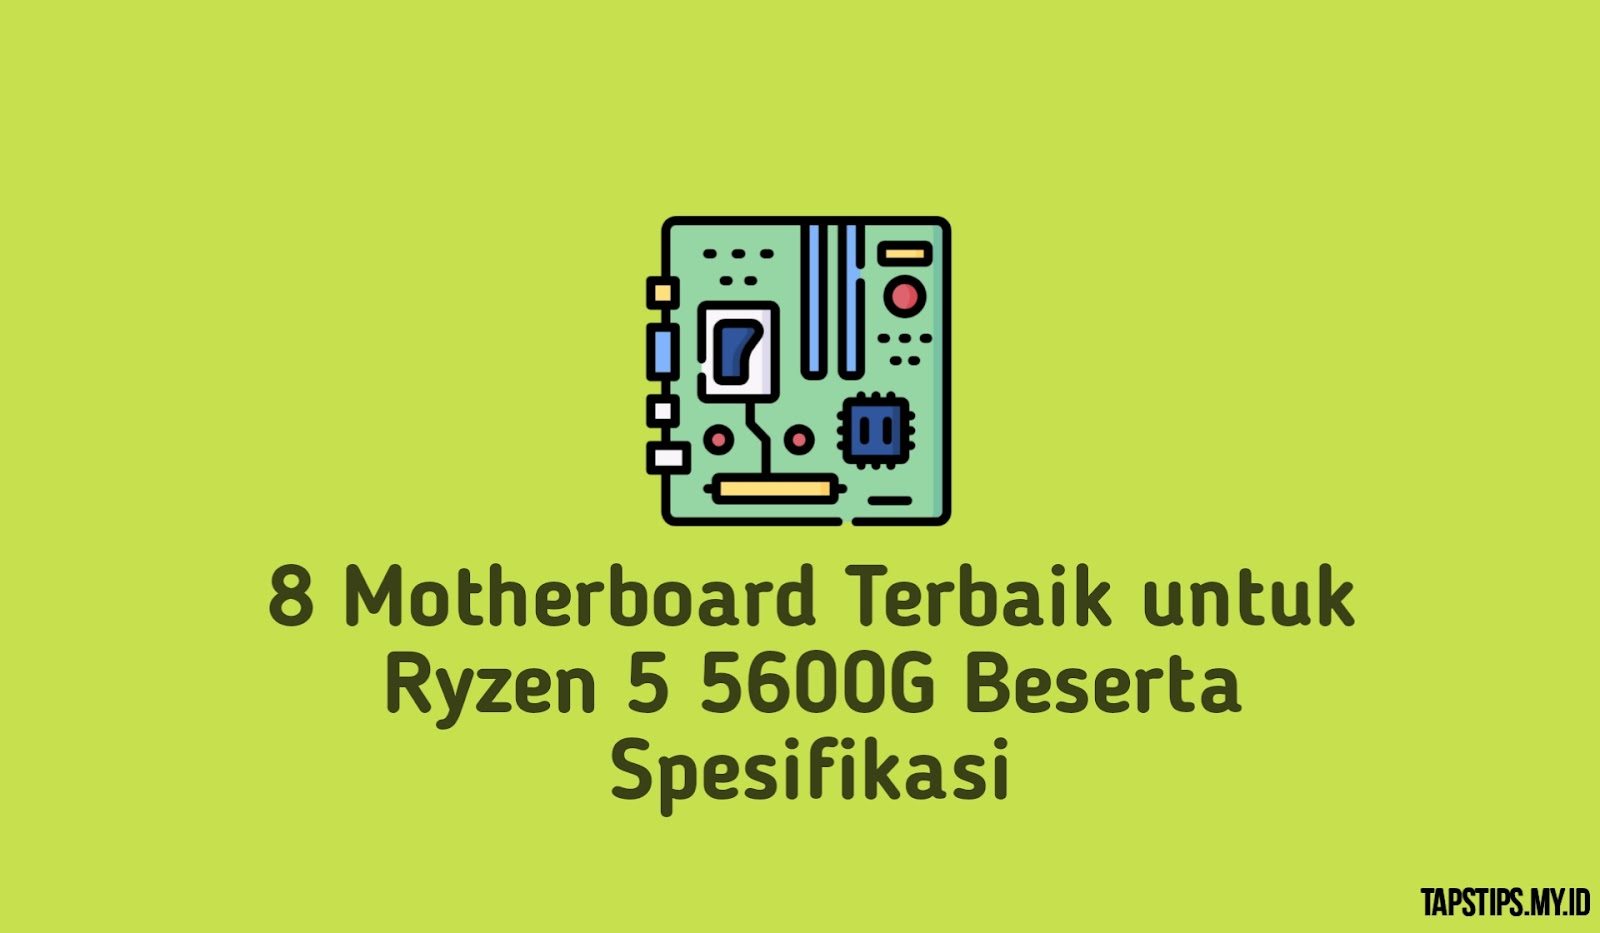 8 Motherboard Terbaik untuk Ryzen 5 5600G Beserta Spesifikasi